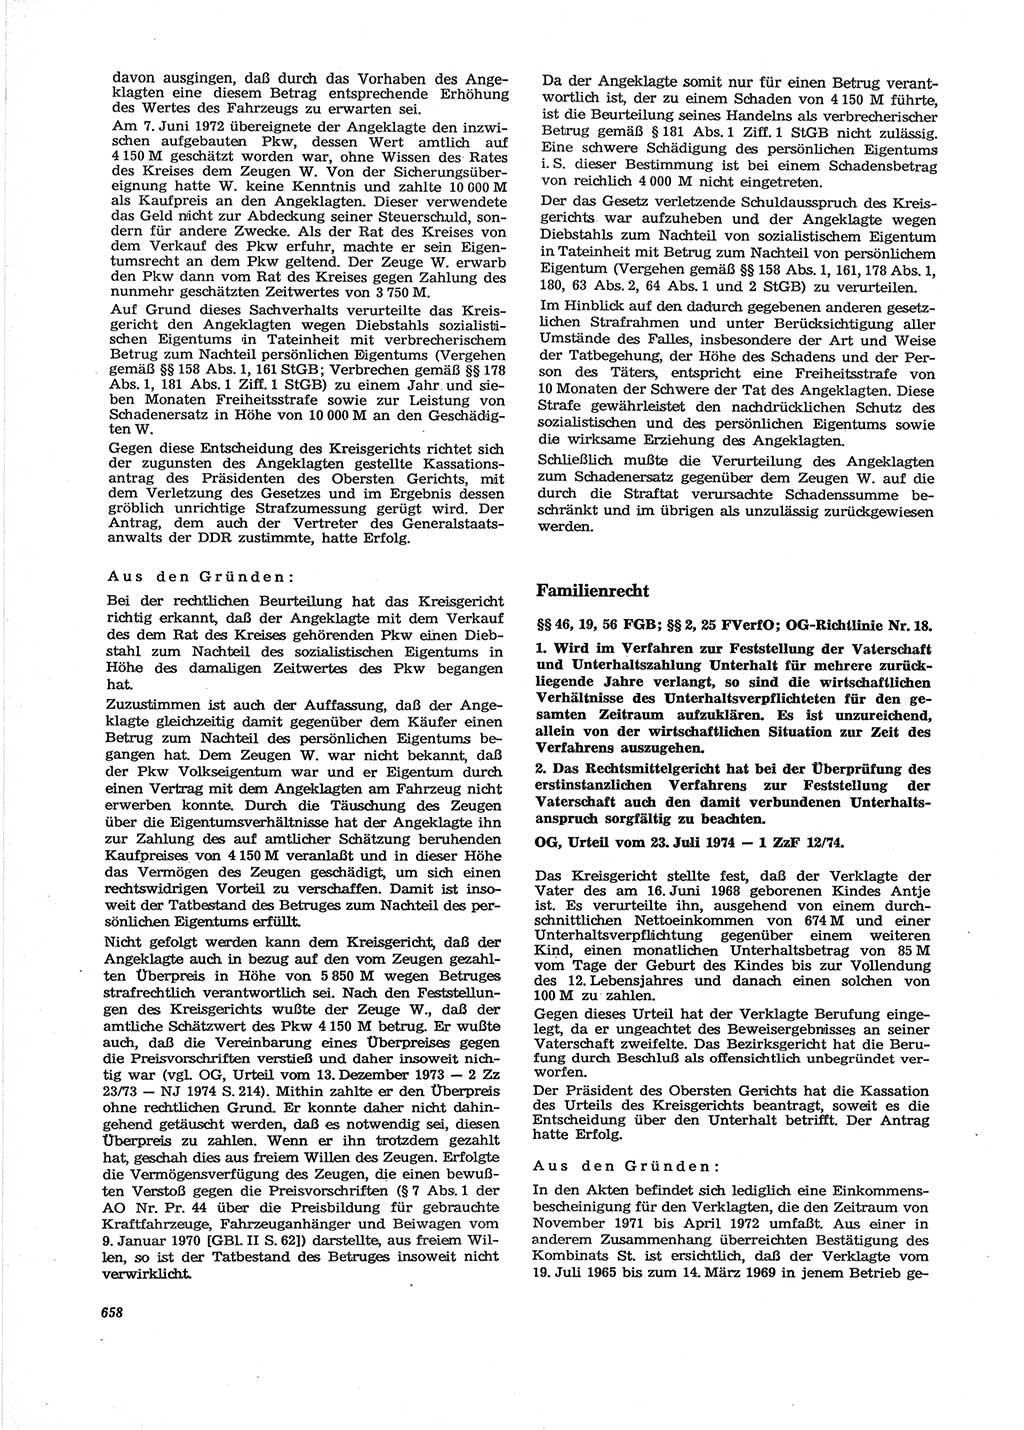 Neue Justiz (NJ), Zeitschrift für Recht und Rechtswissenschaft [Deutsche Demokratische Republik (DDR)], 28. Jahrgang 1974, Seite 658 (NJ DDR 1974, S. 658)